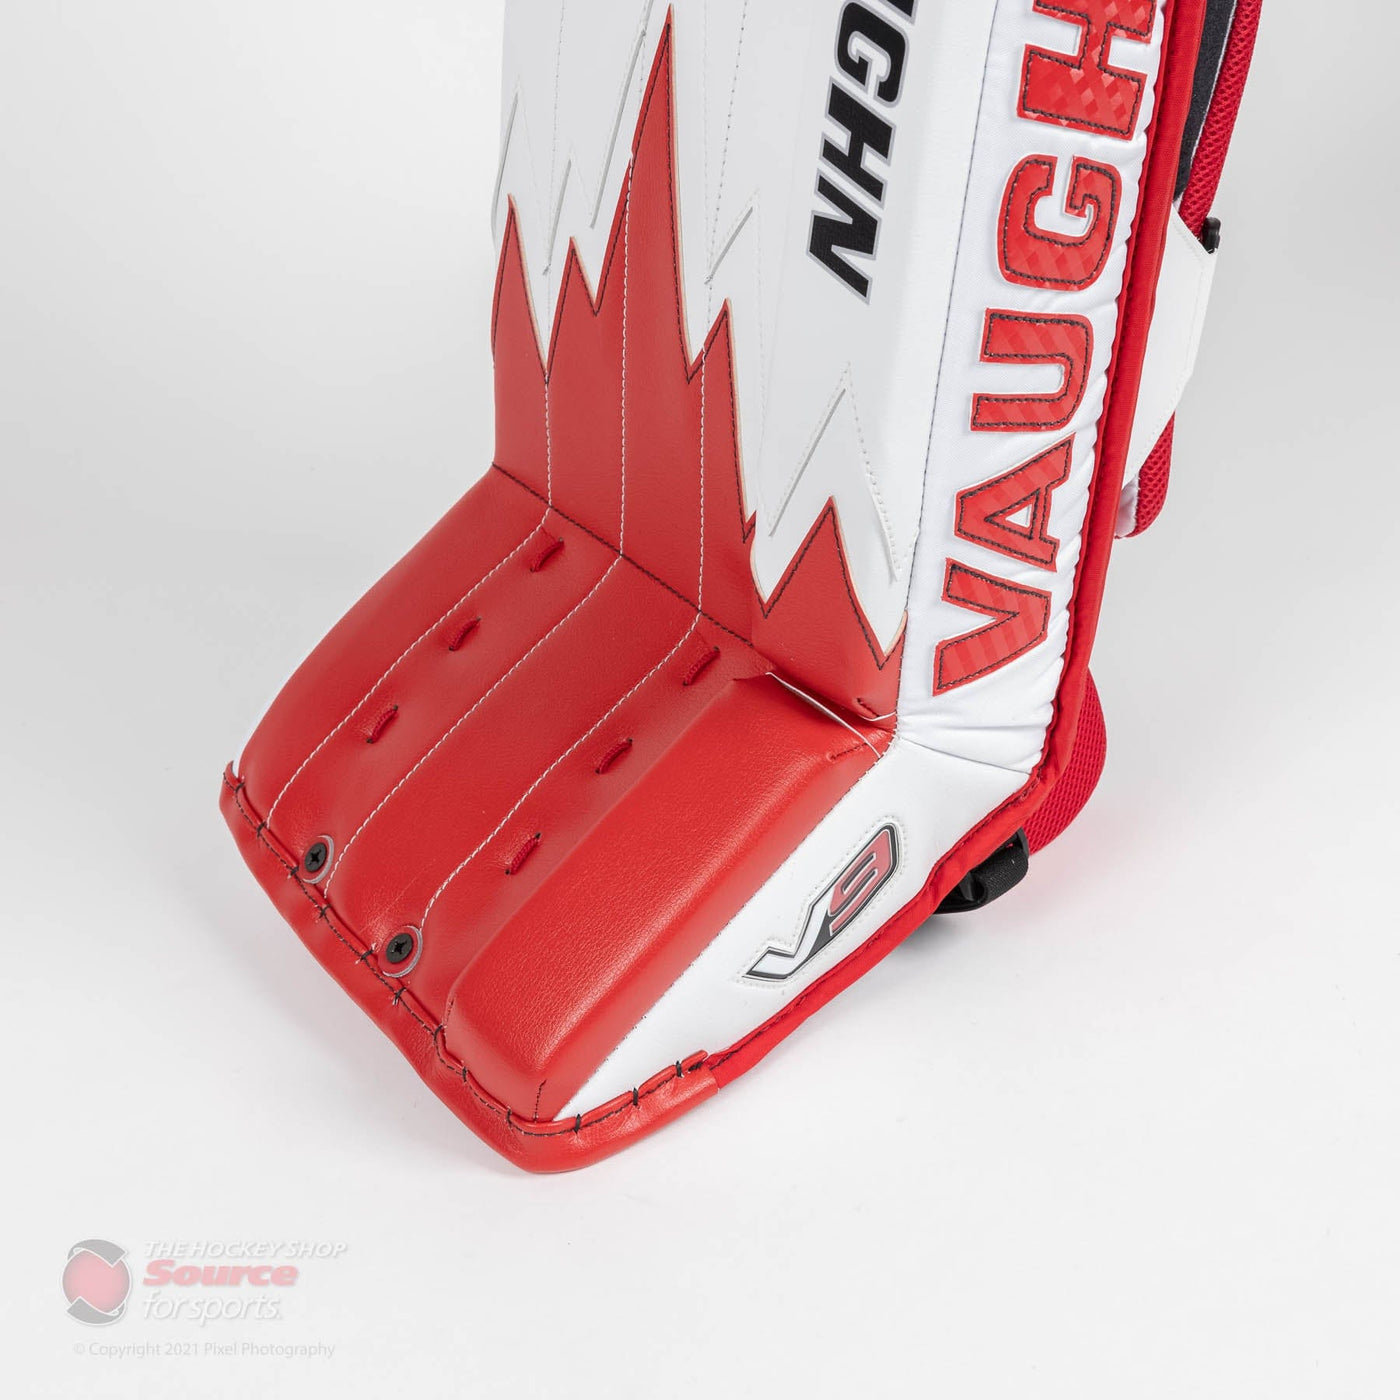 Vaughn Velocity V9 Pro Carbon Senior Goalie Leg Pads - Iceberg Graphic